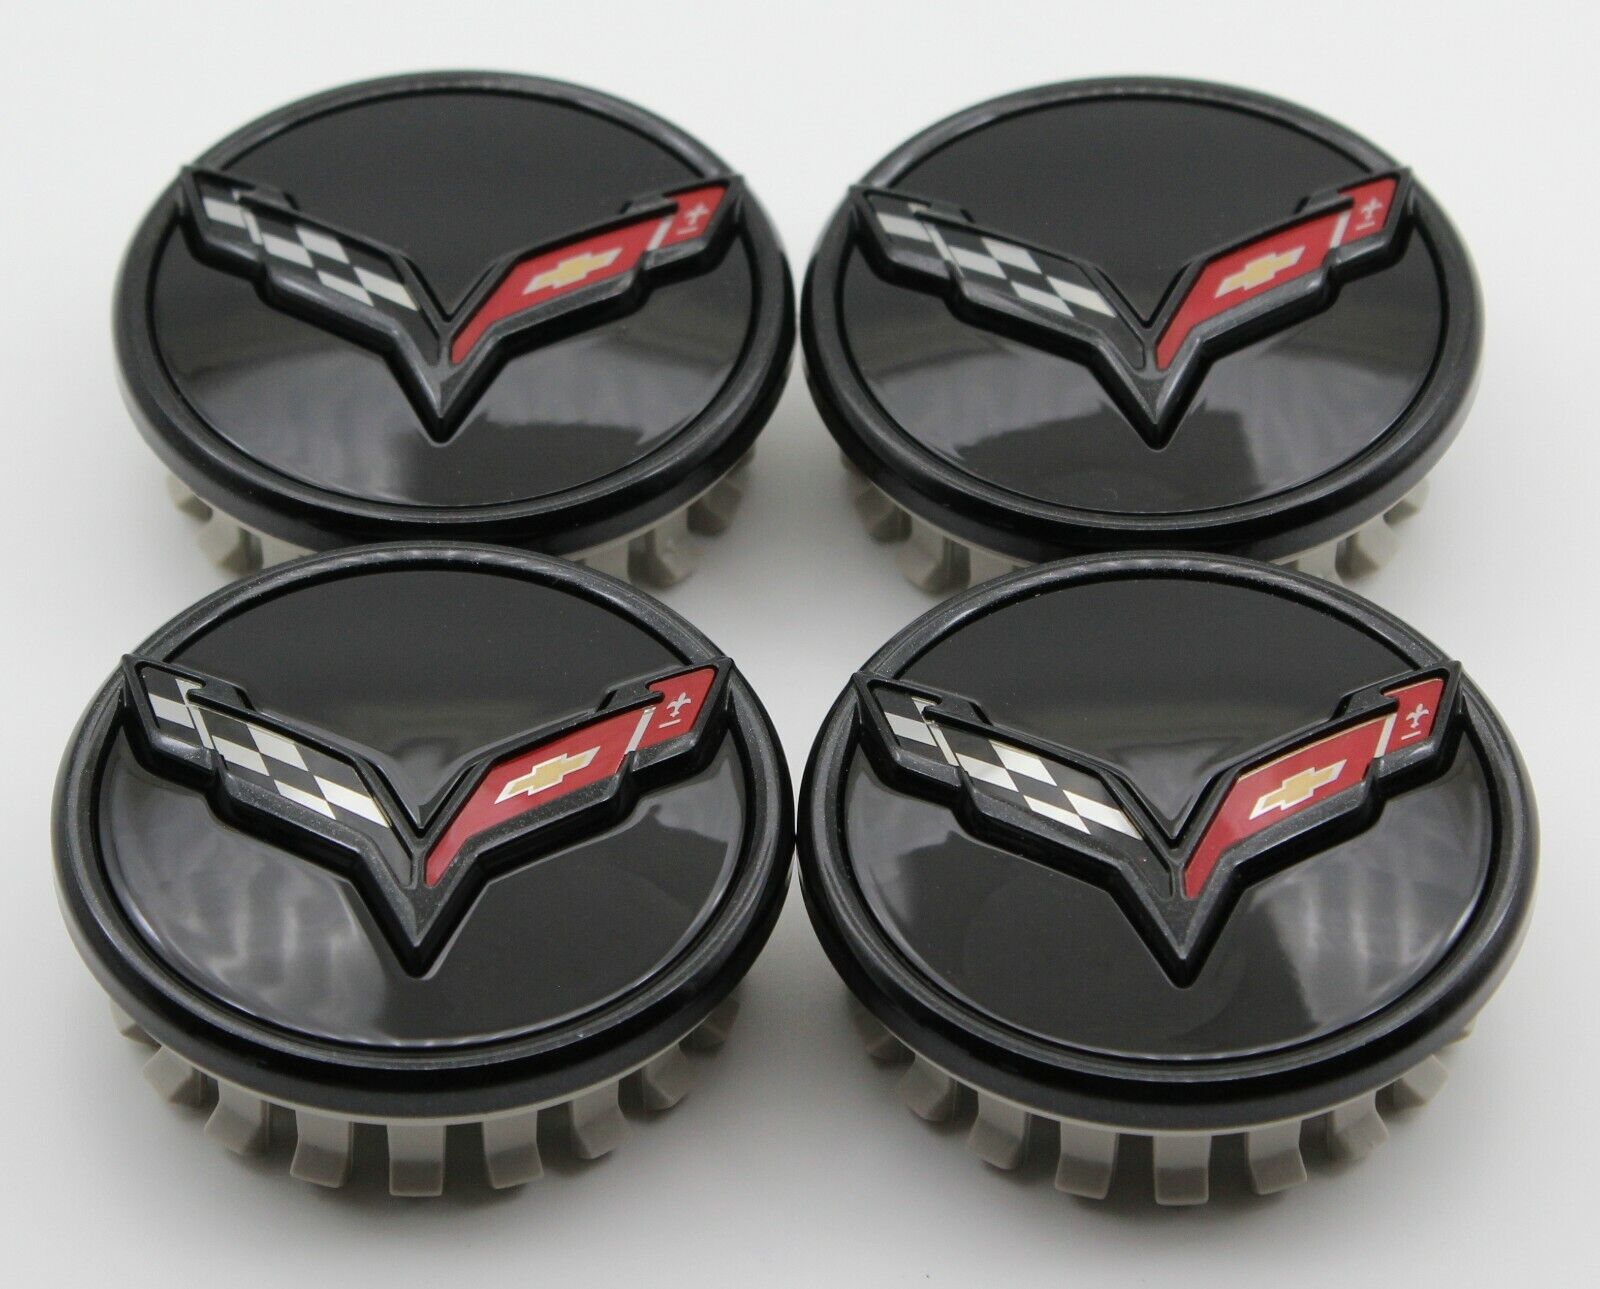 NEW Chevrolet Corvette C7 black center caps factory OEM GM 23217059 - set of 4